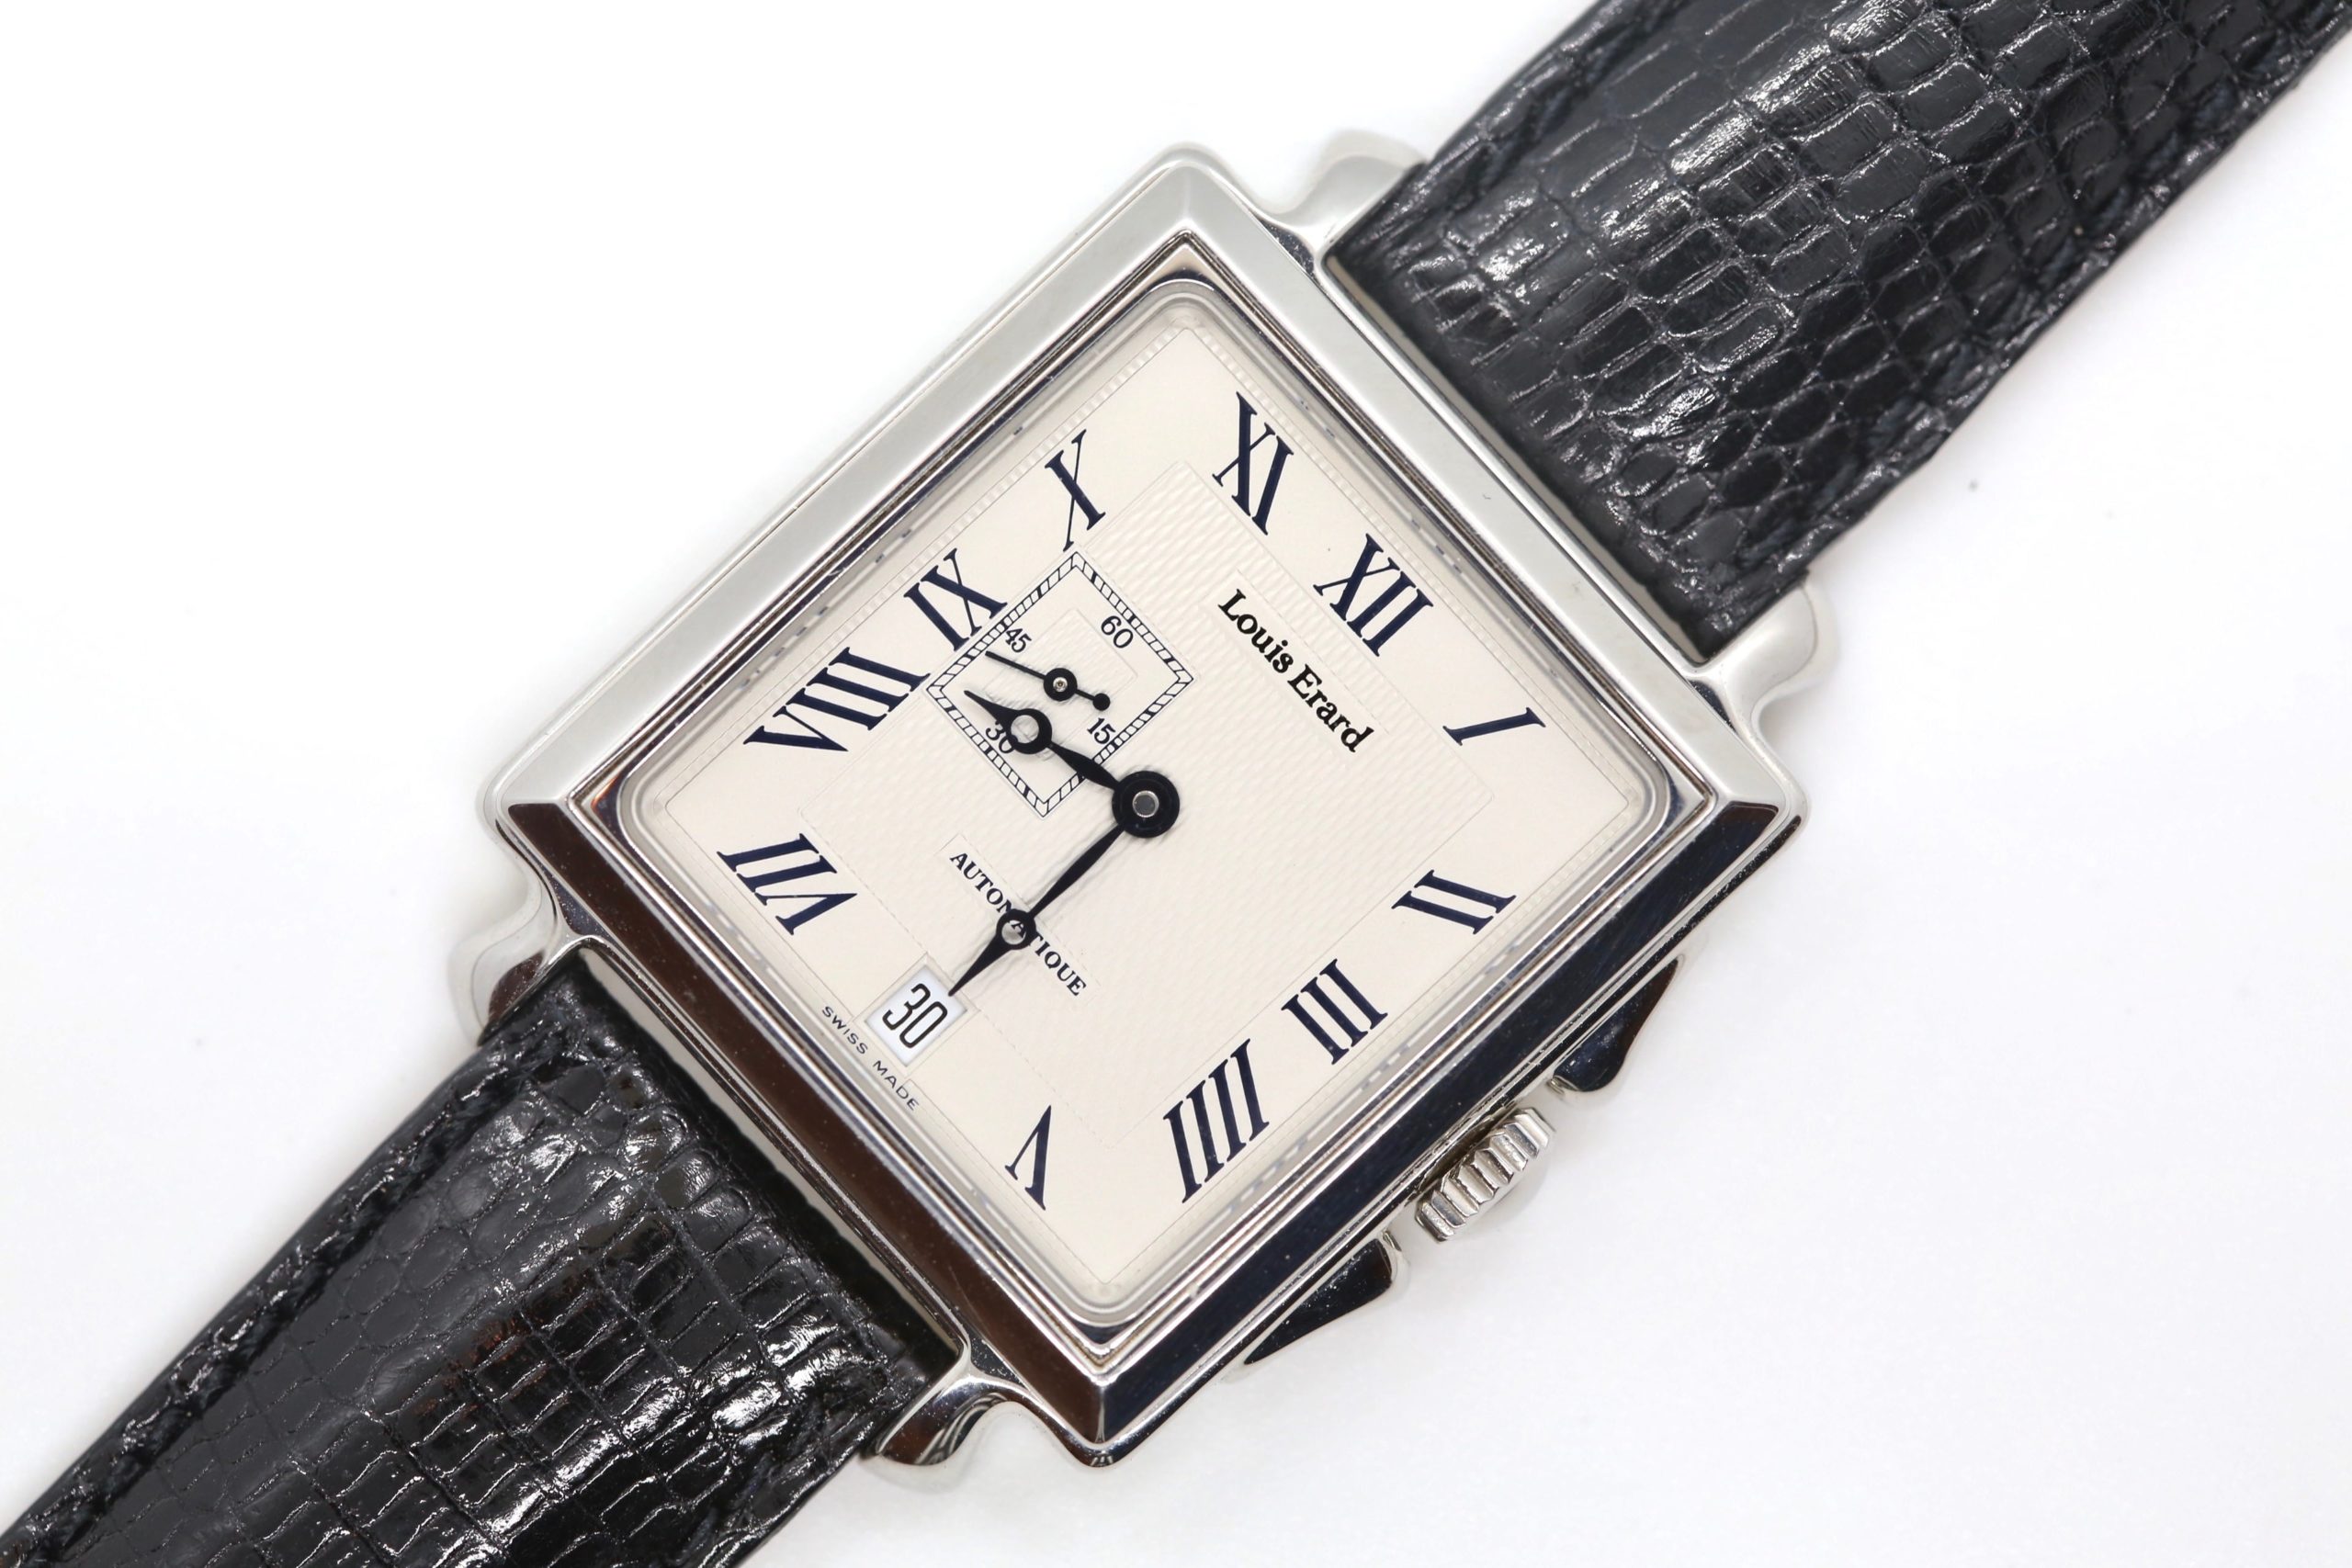 Louis Erard La Carree Classique Rare Square Stainless Steel Leather  Automatic Mens Wristwatch 34 MM Louis Erard